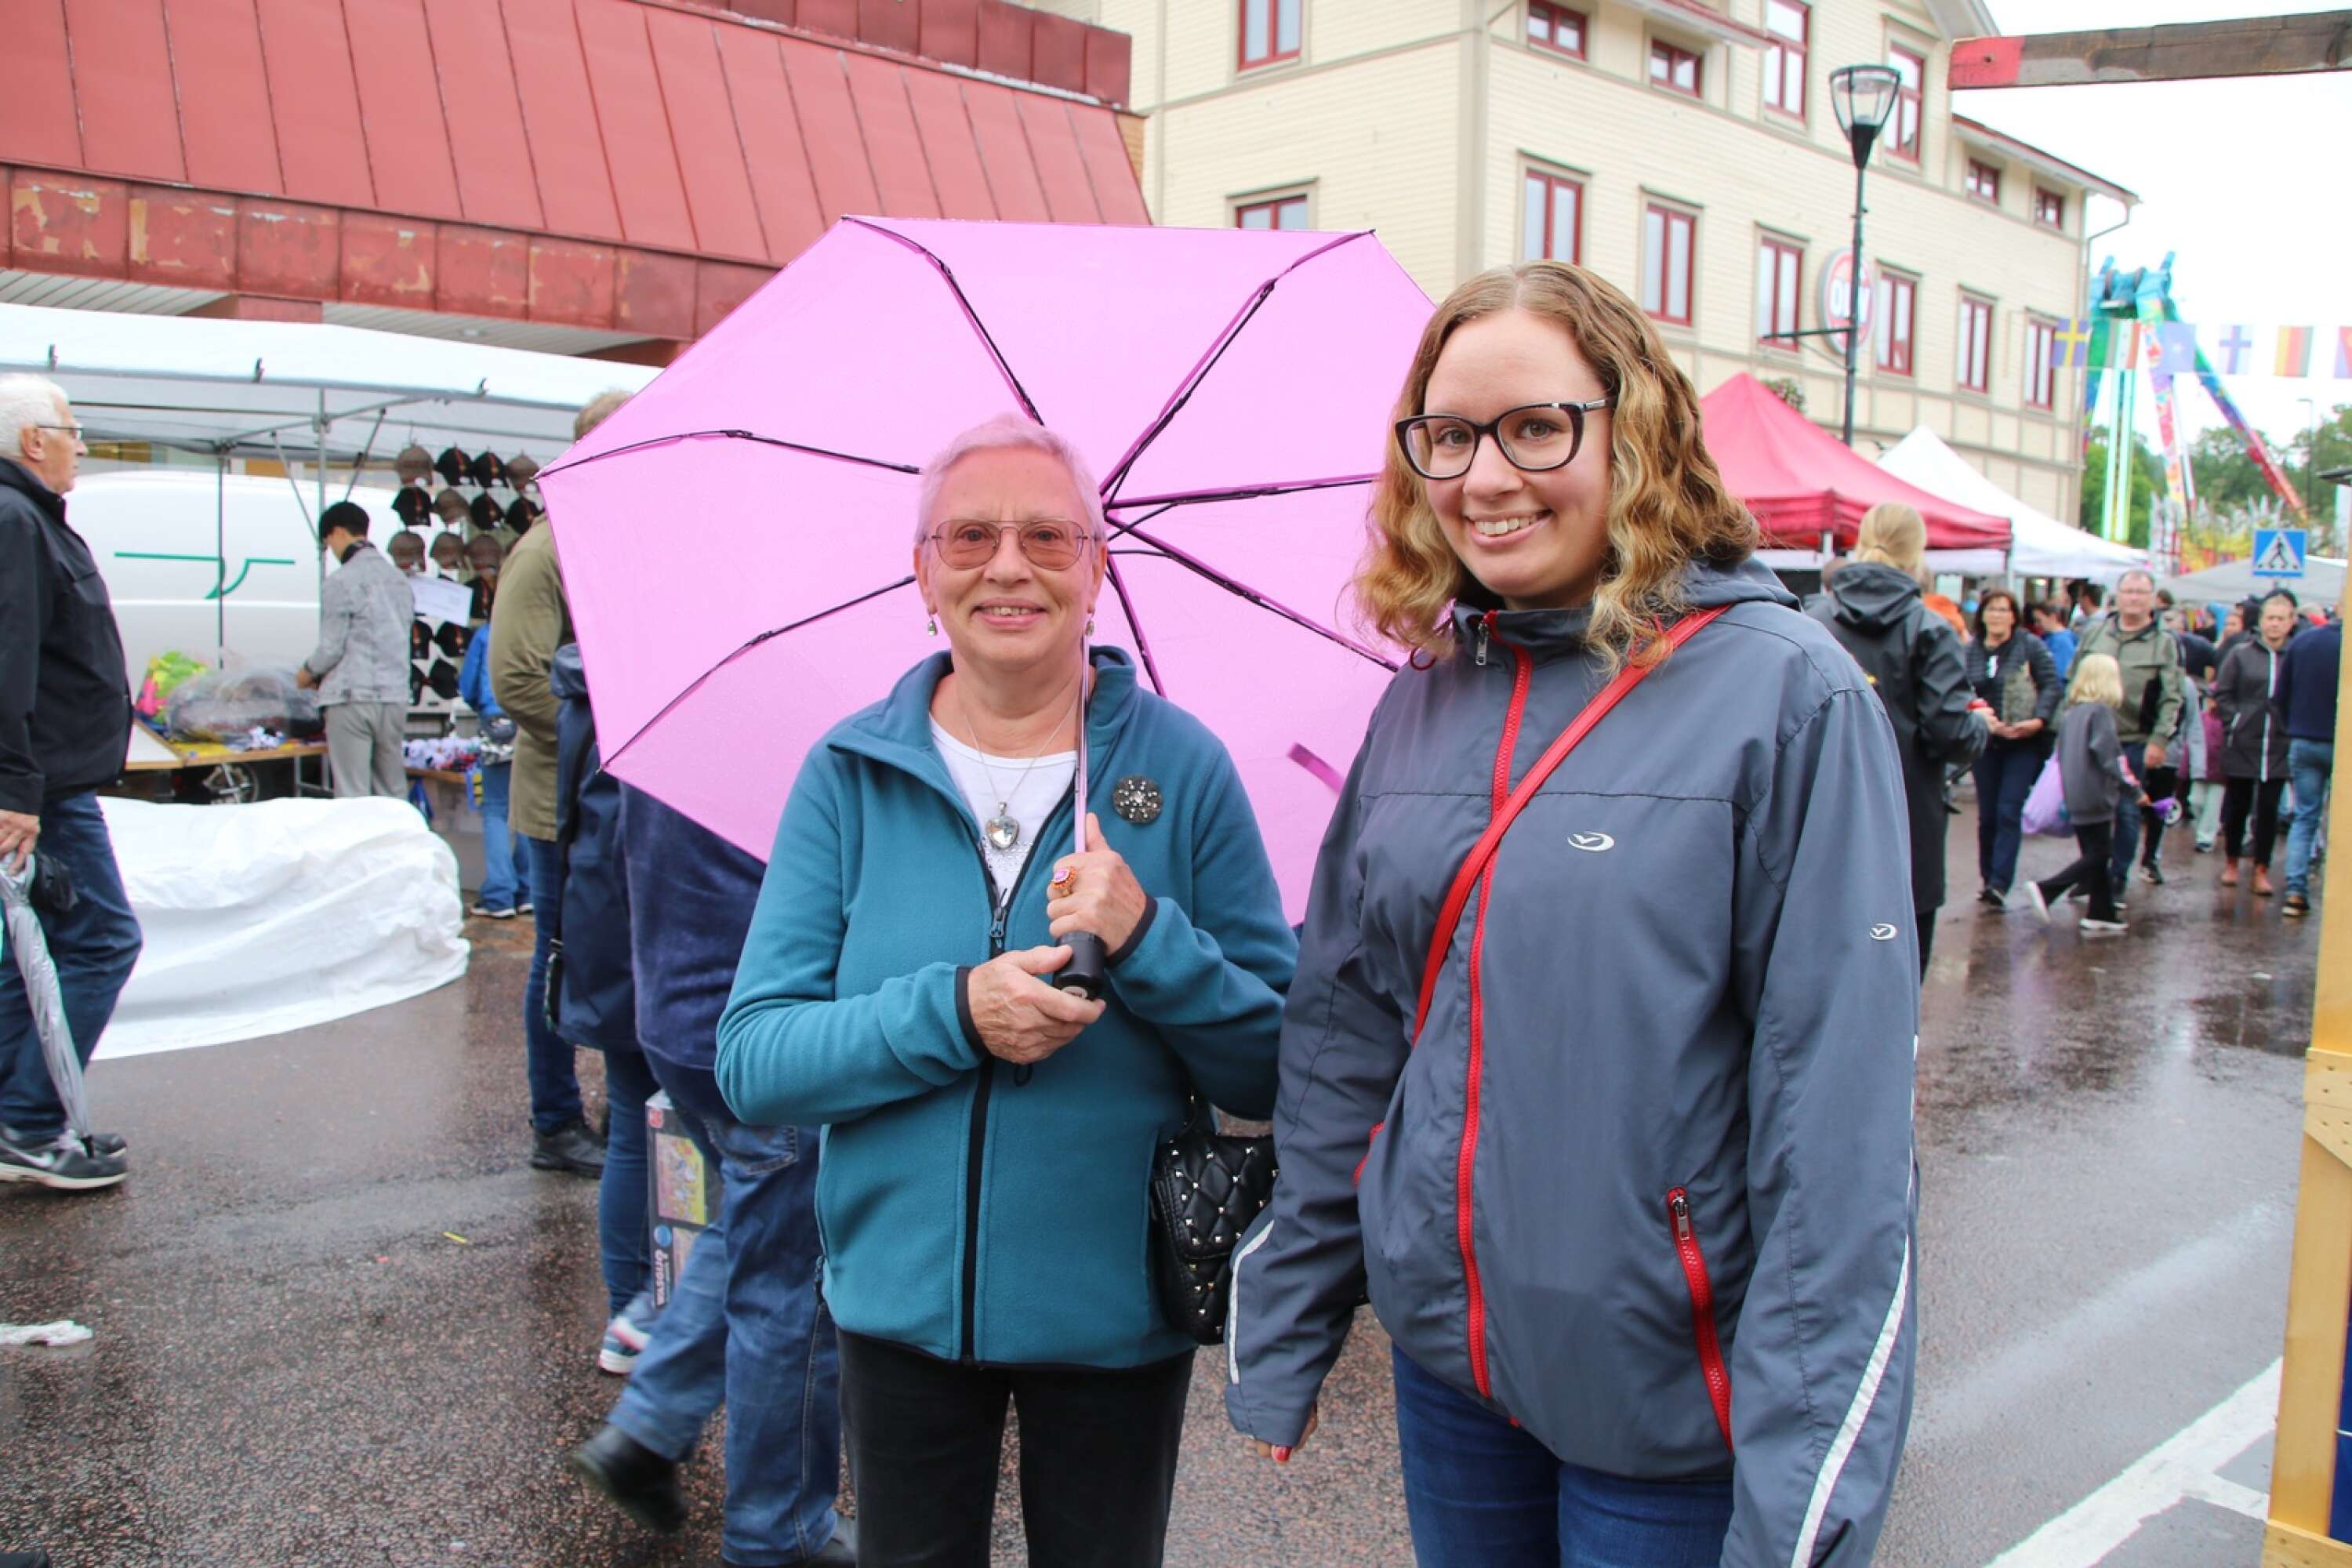 Regnet stoppade inte Oxhäljabesökarna.
Mor och dotter, Kristina Blok och Annelie Eriksson Blok, har längtat mycket efter Oxhälja.